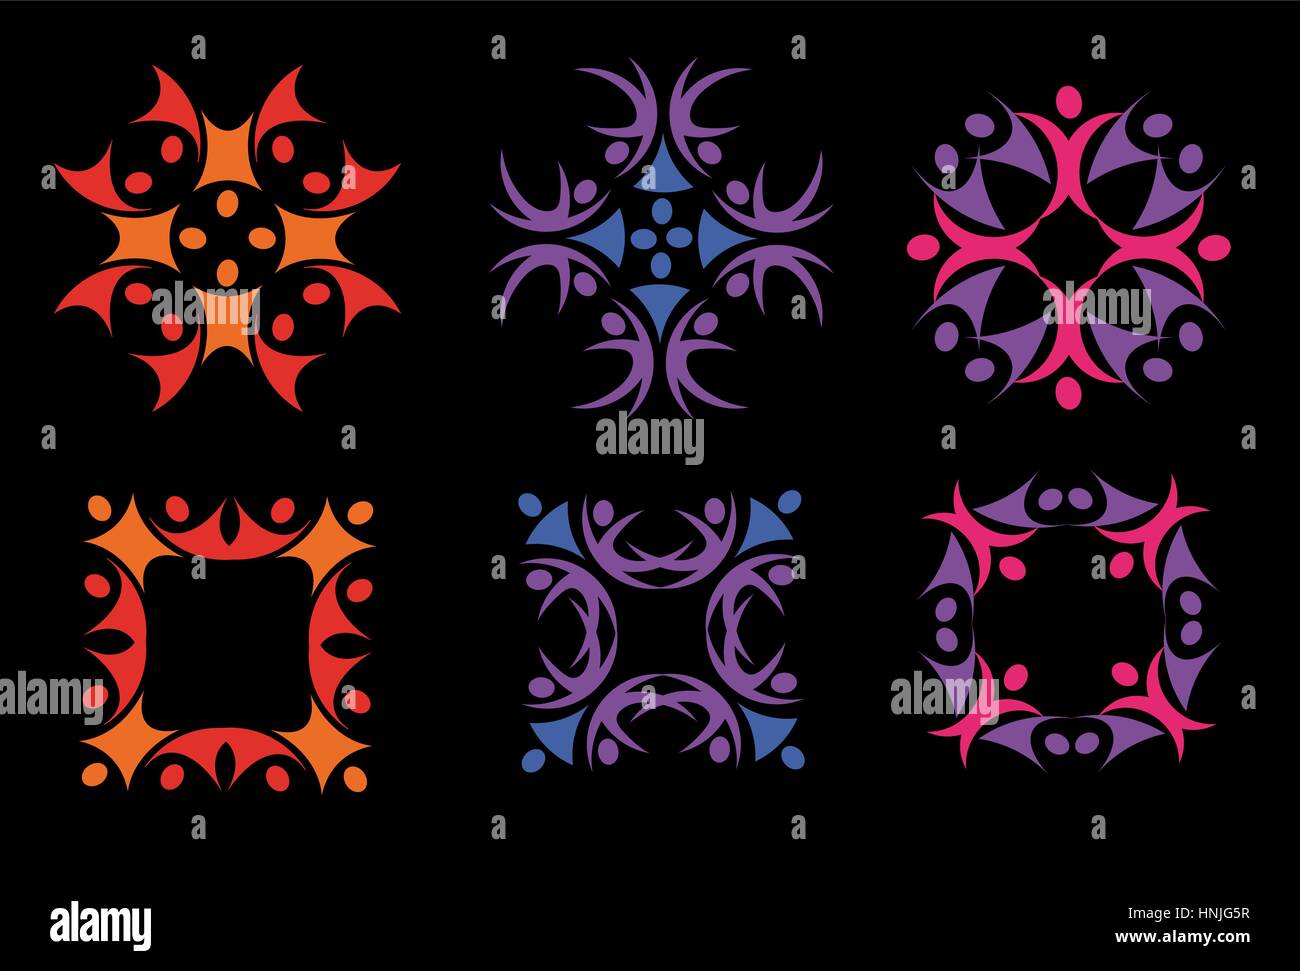 Isolierte abstrakte bunte florale Dekorationselemente Logos setzen auf schwarzem Hintergrund-Vektor-Illustration. Stock Vektor